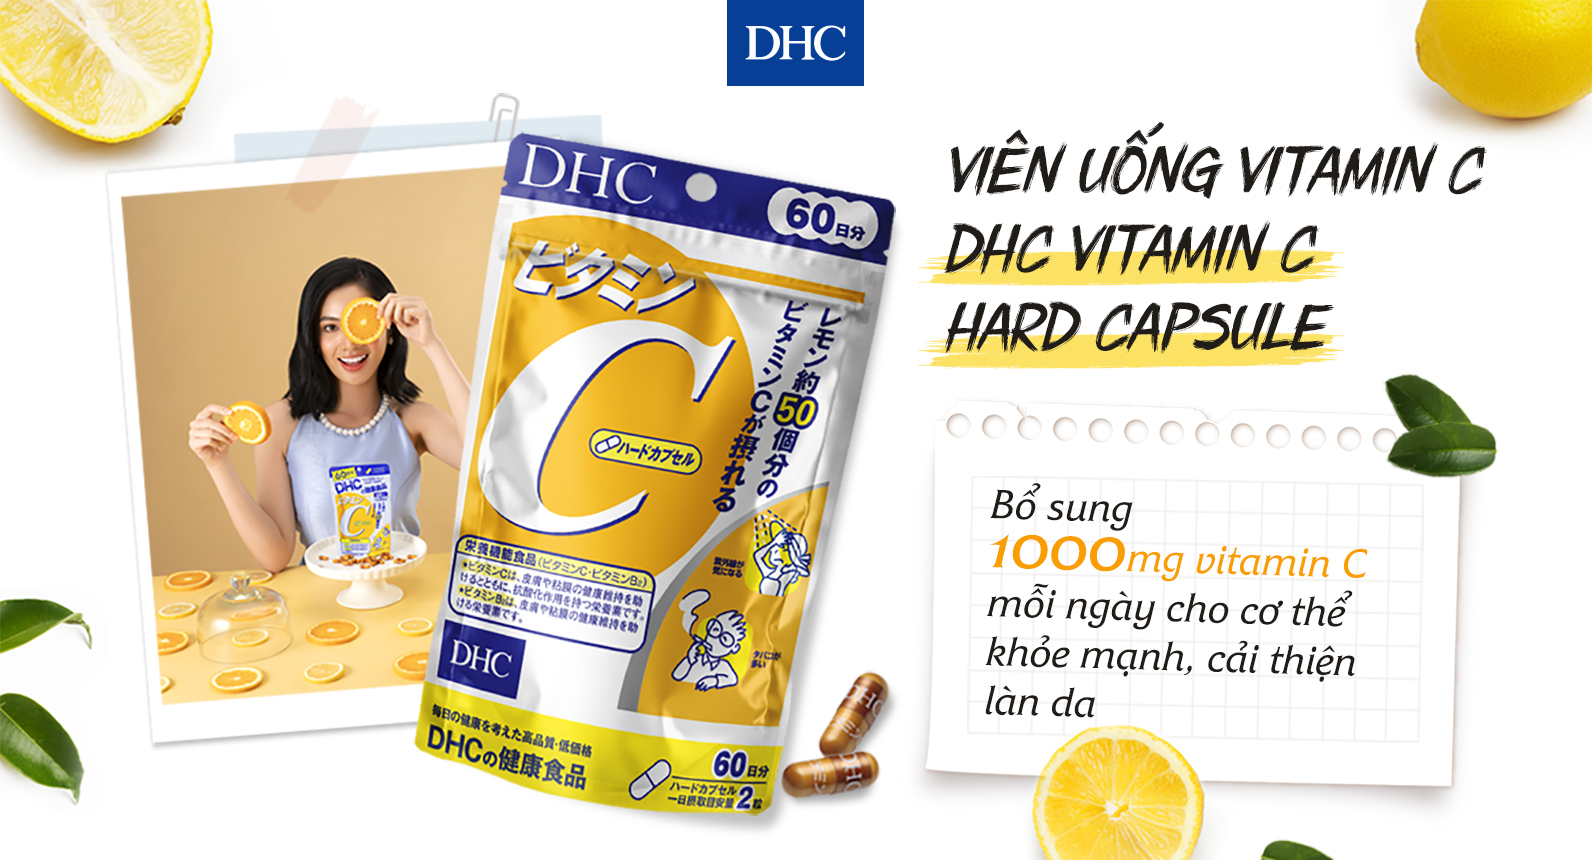 Khi nào là thời điểm tốt nhất để uống vitamin C của DHC?
